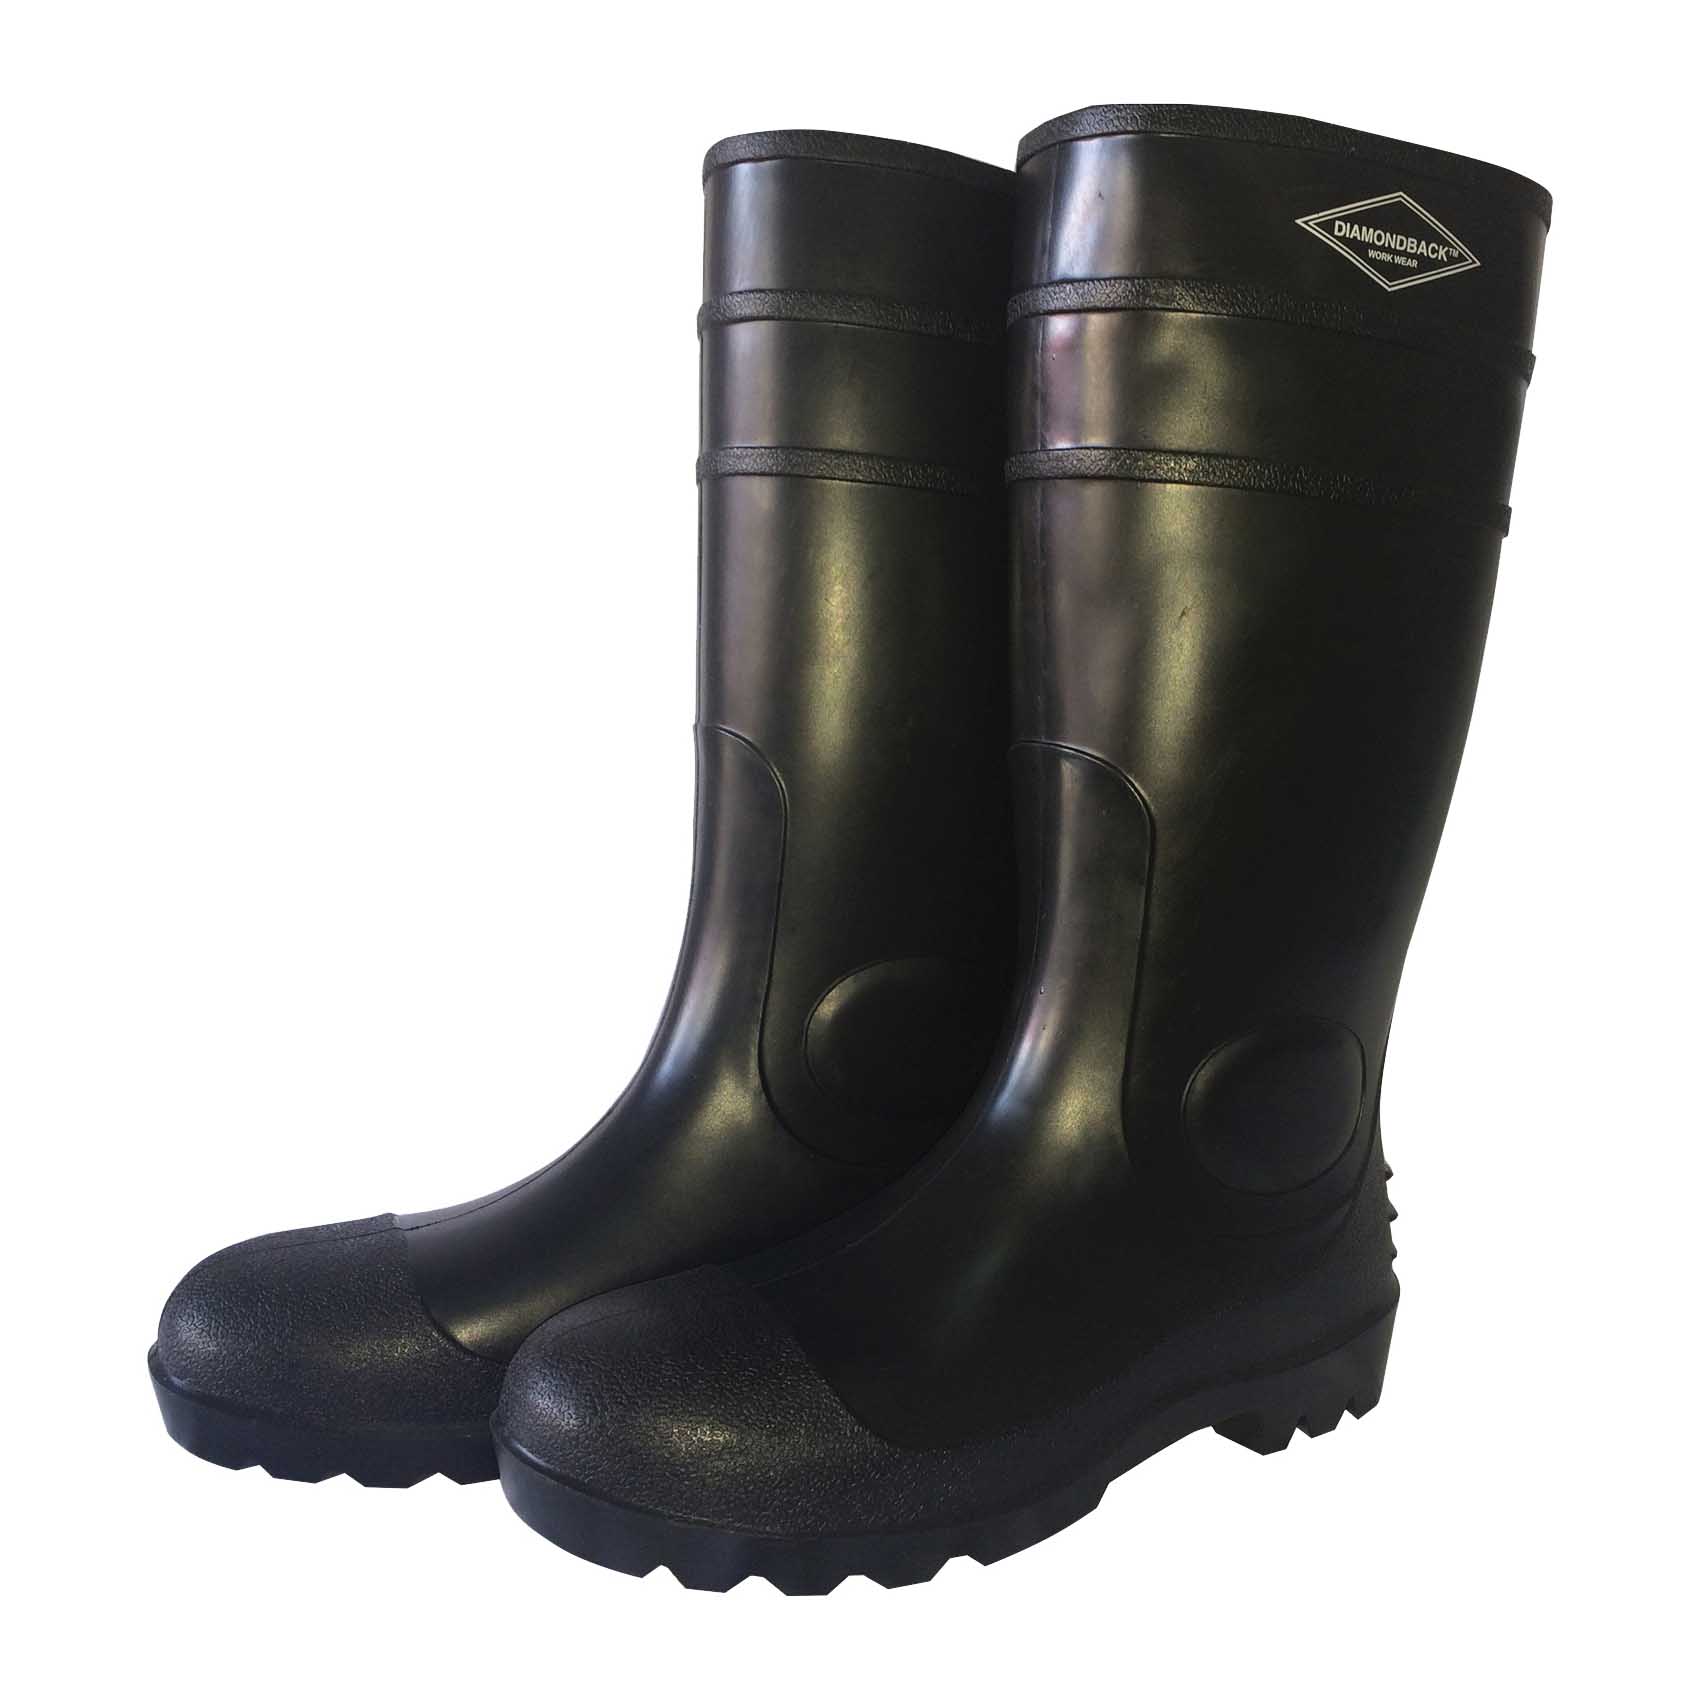 L-G06B11 Knee Boots, 11, Black, PVC Upper, Slip on Boots Closure